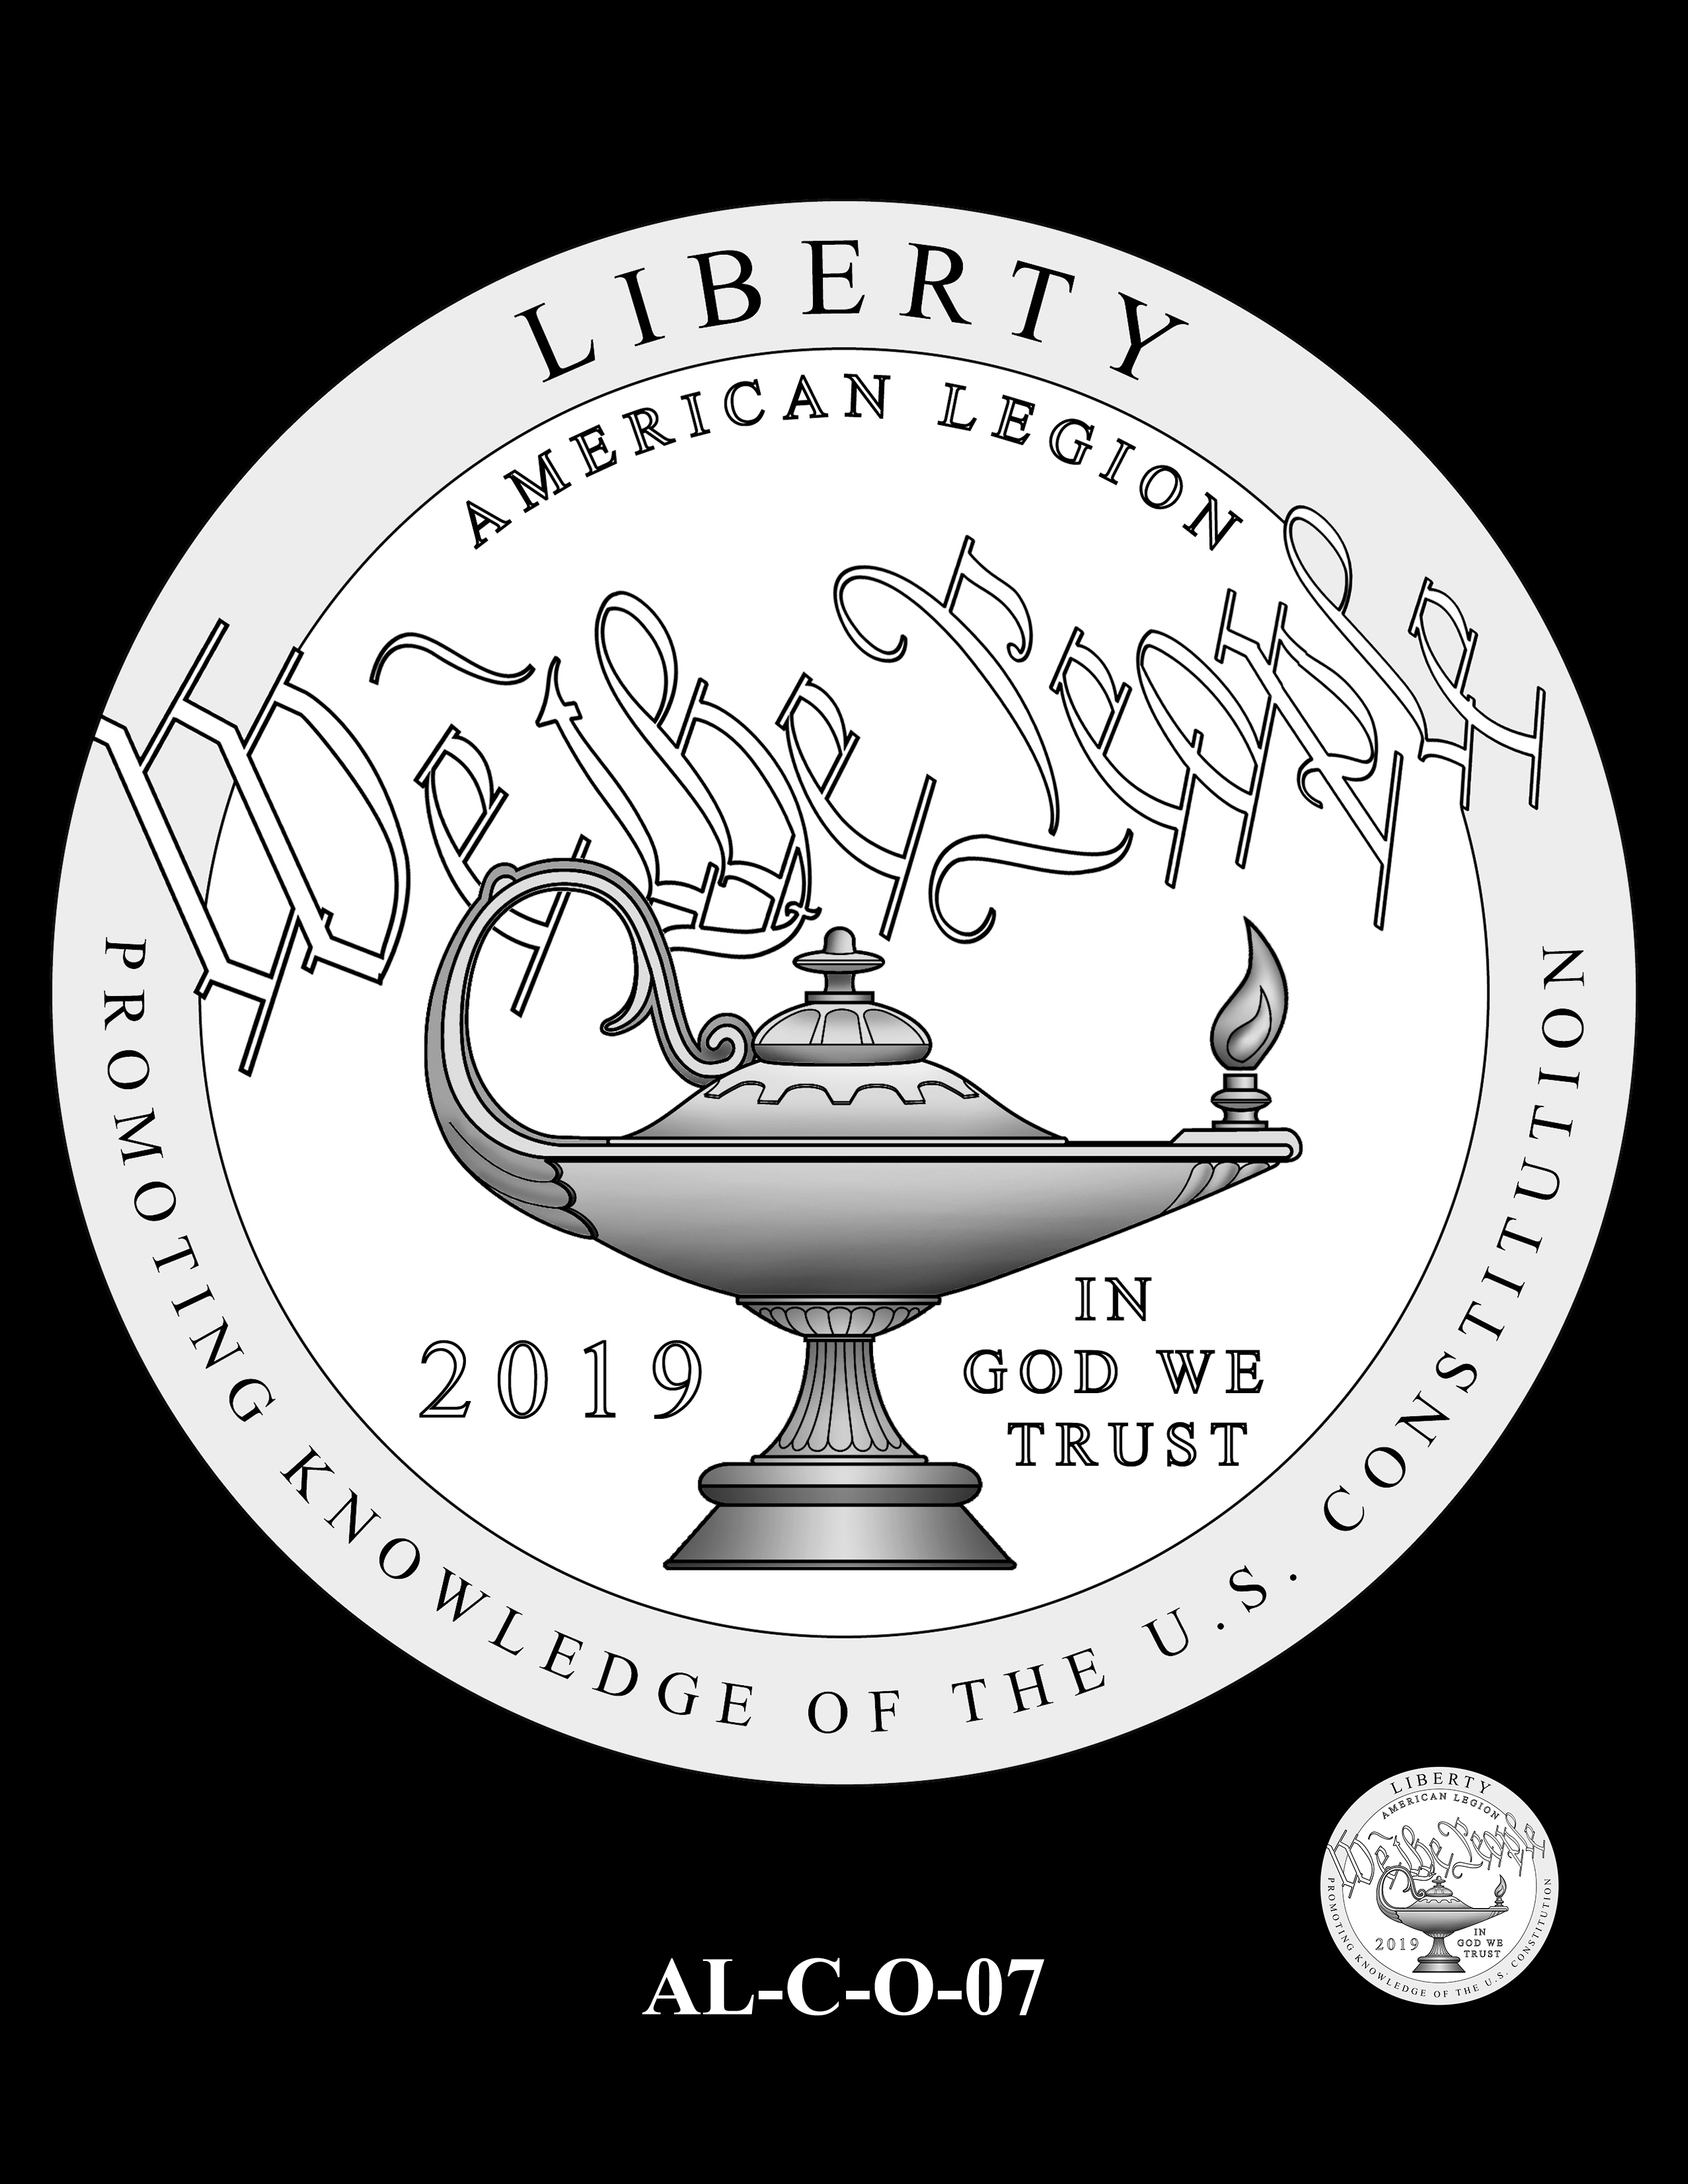 AL-C-O-07 -- 2019 American Legion 100th Anniversary Commemorative Coin Program - Clad Obverse